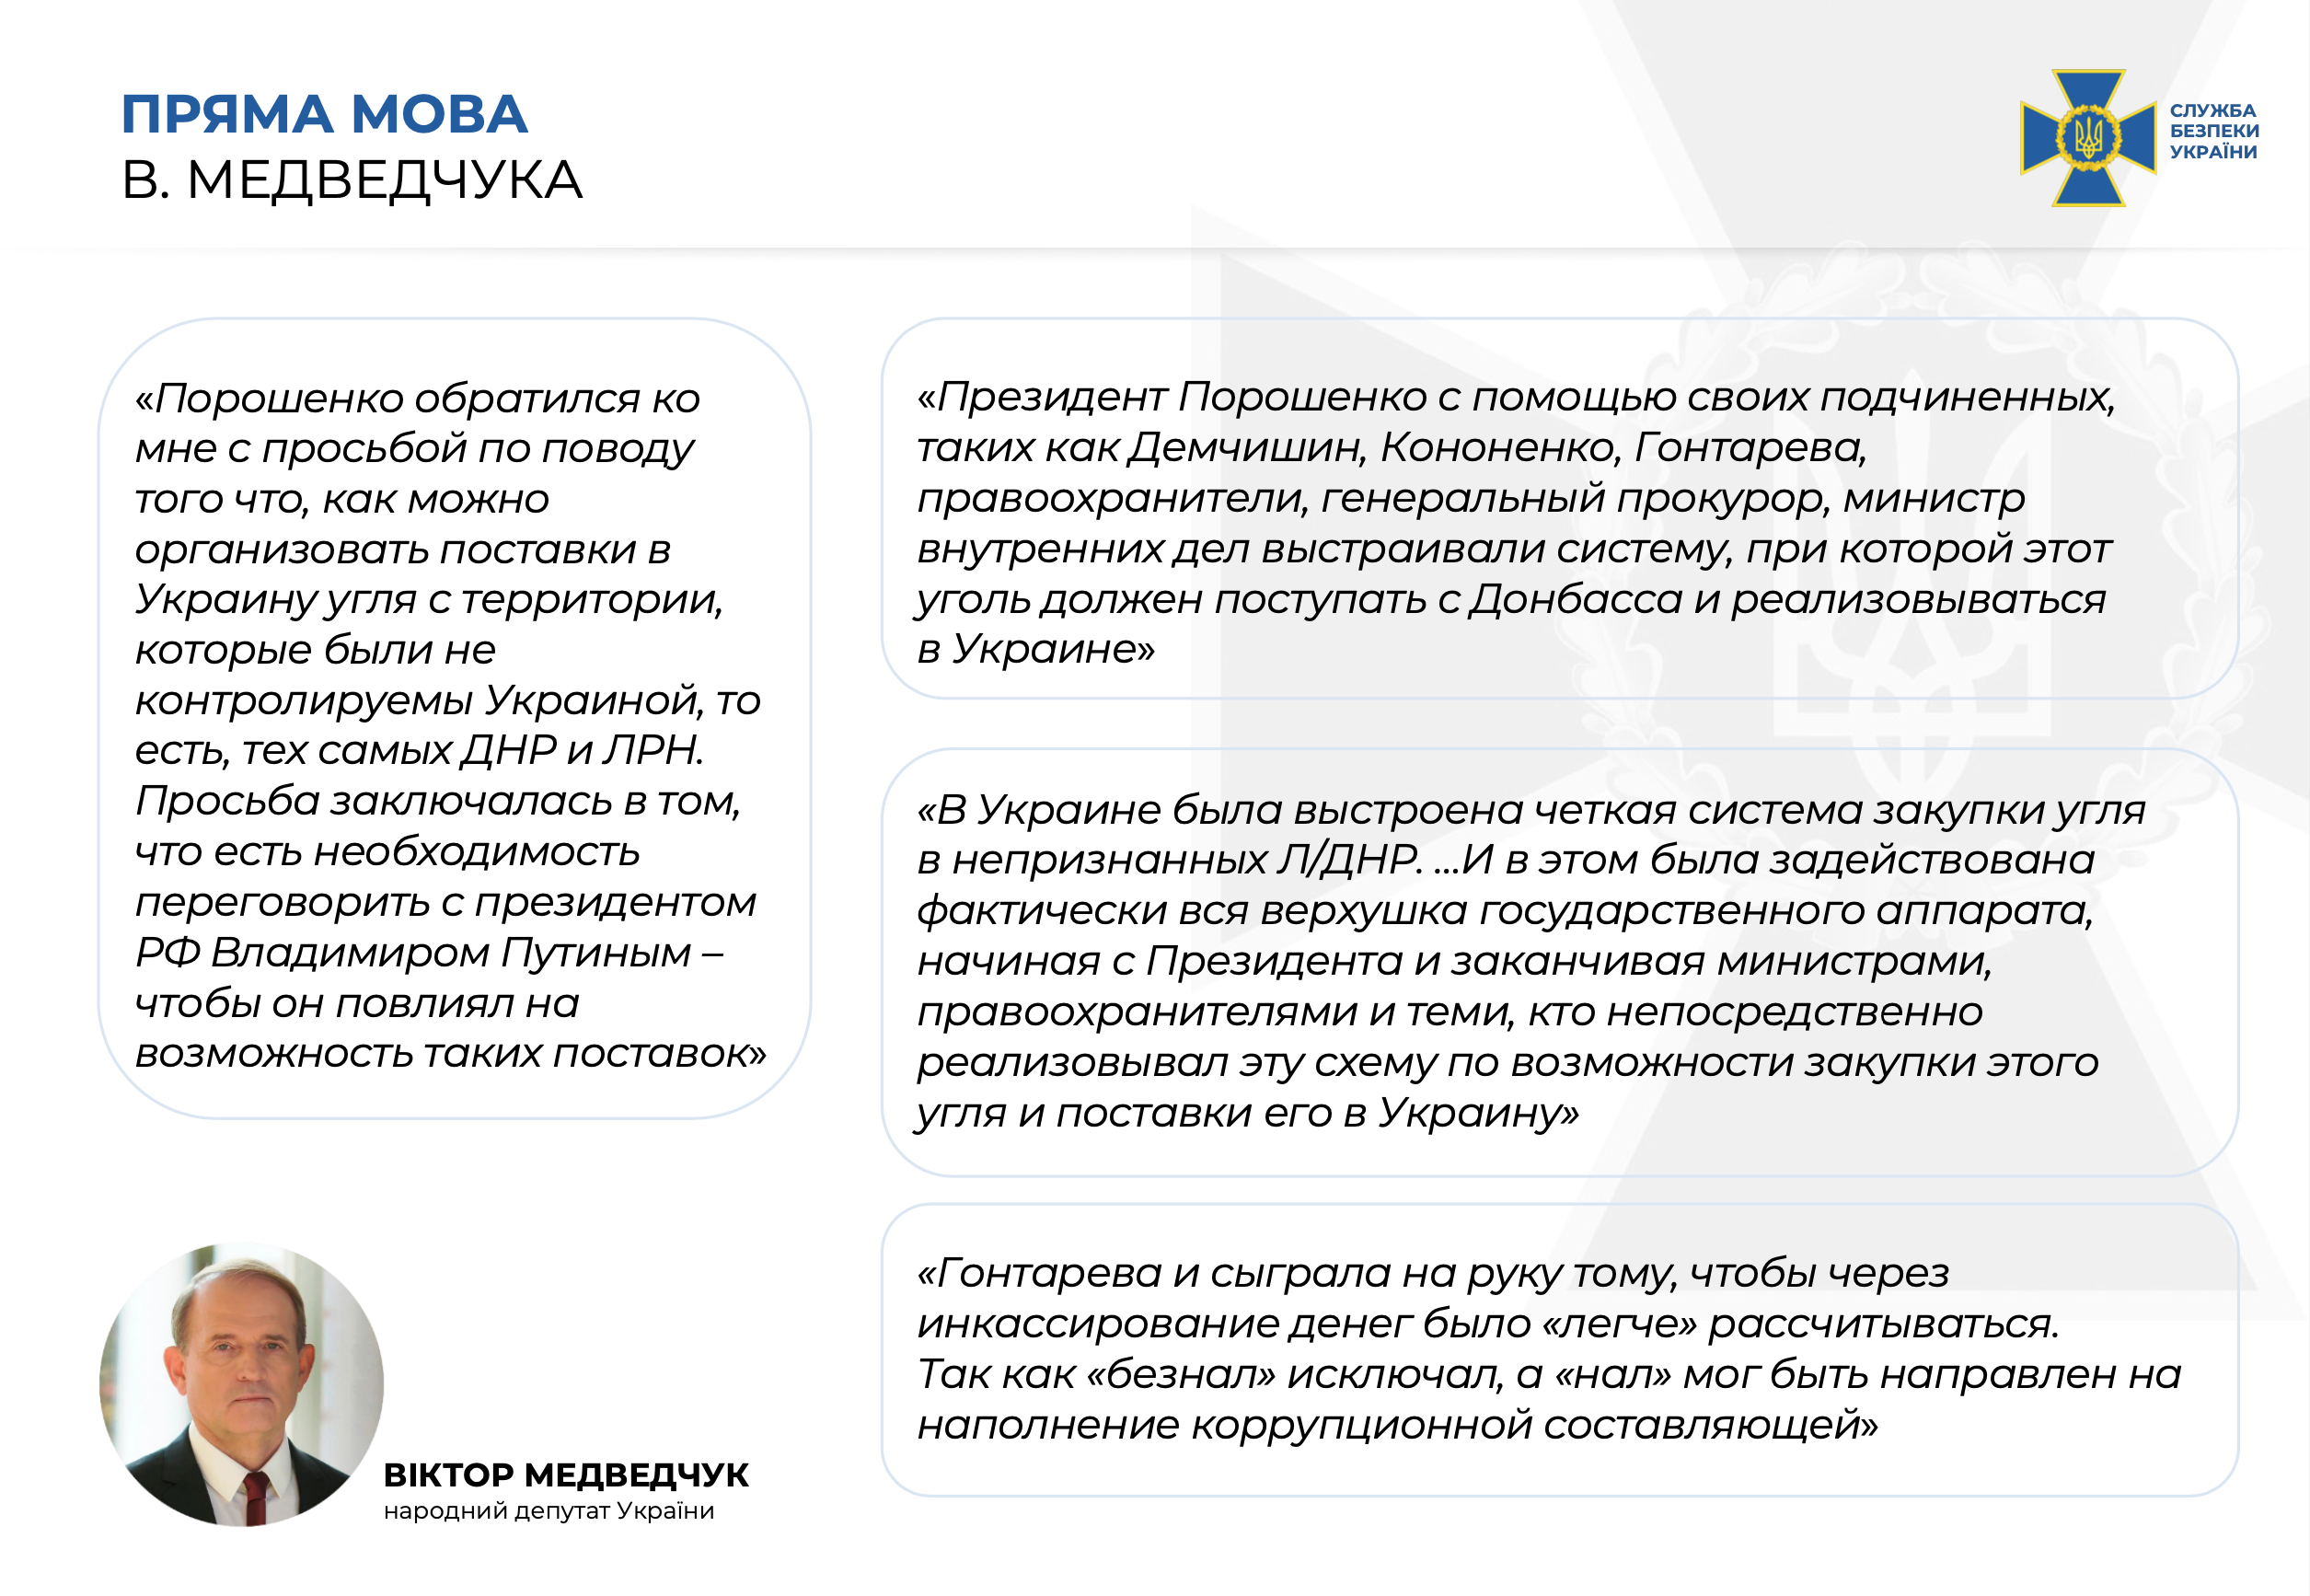 СБУ: Медведчук дал показания против Порошенко (видео) - 3 - изображение